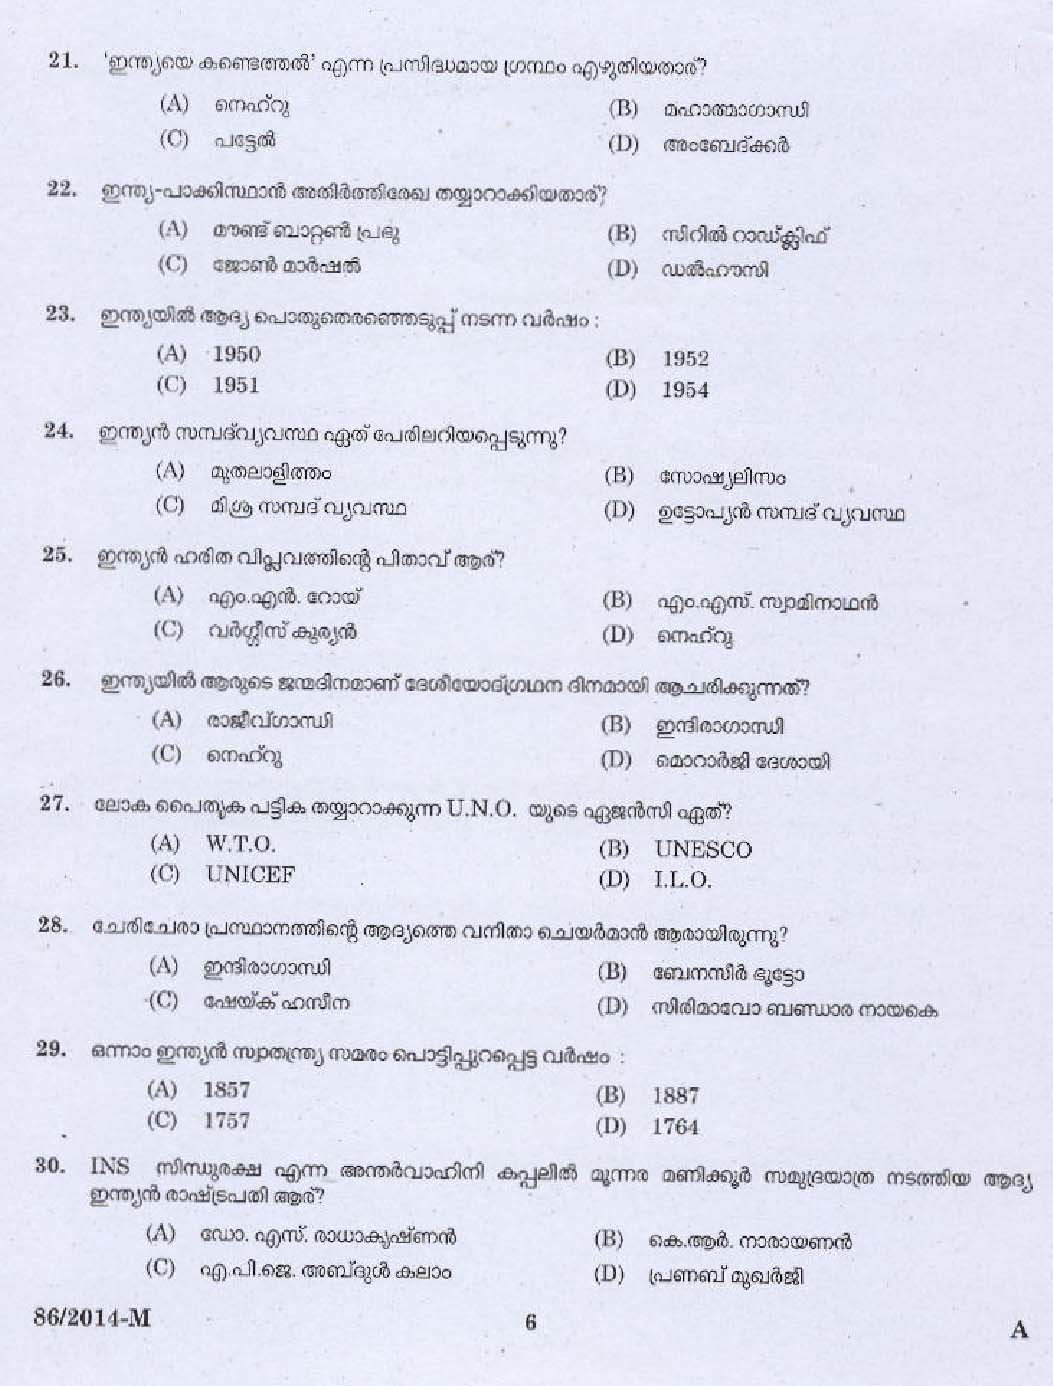 KPSC Village Extension Officer Grade II Exam 2014 Code 862014 M 4